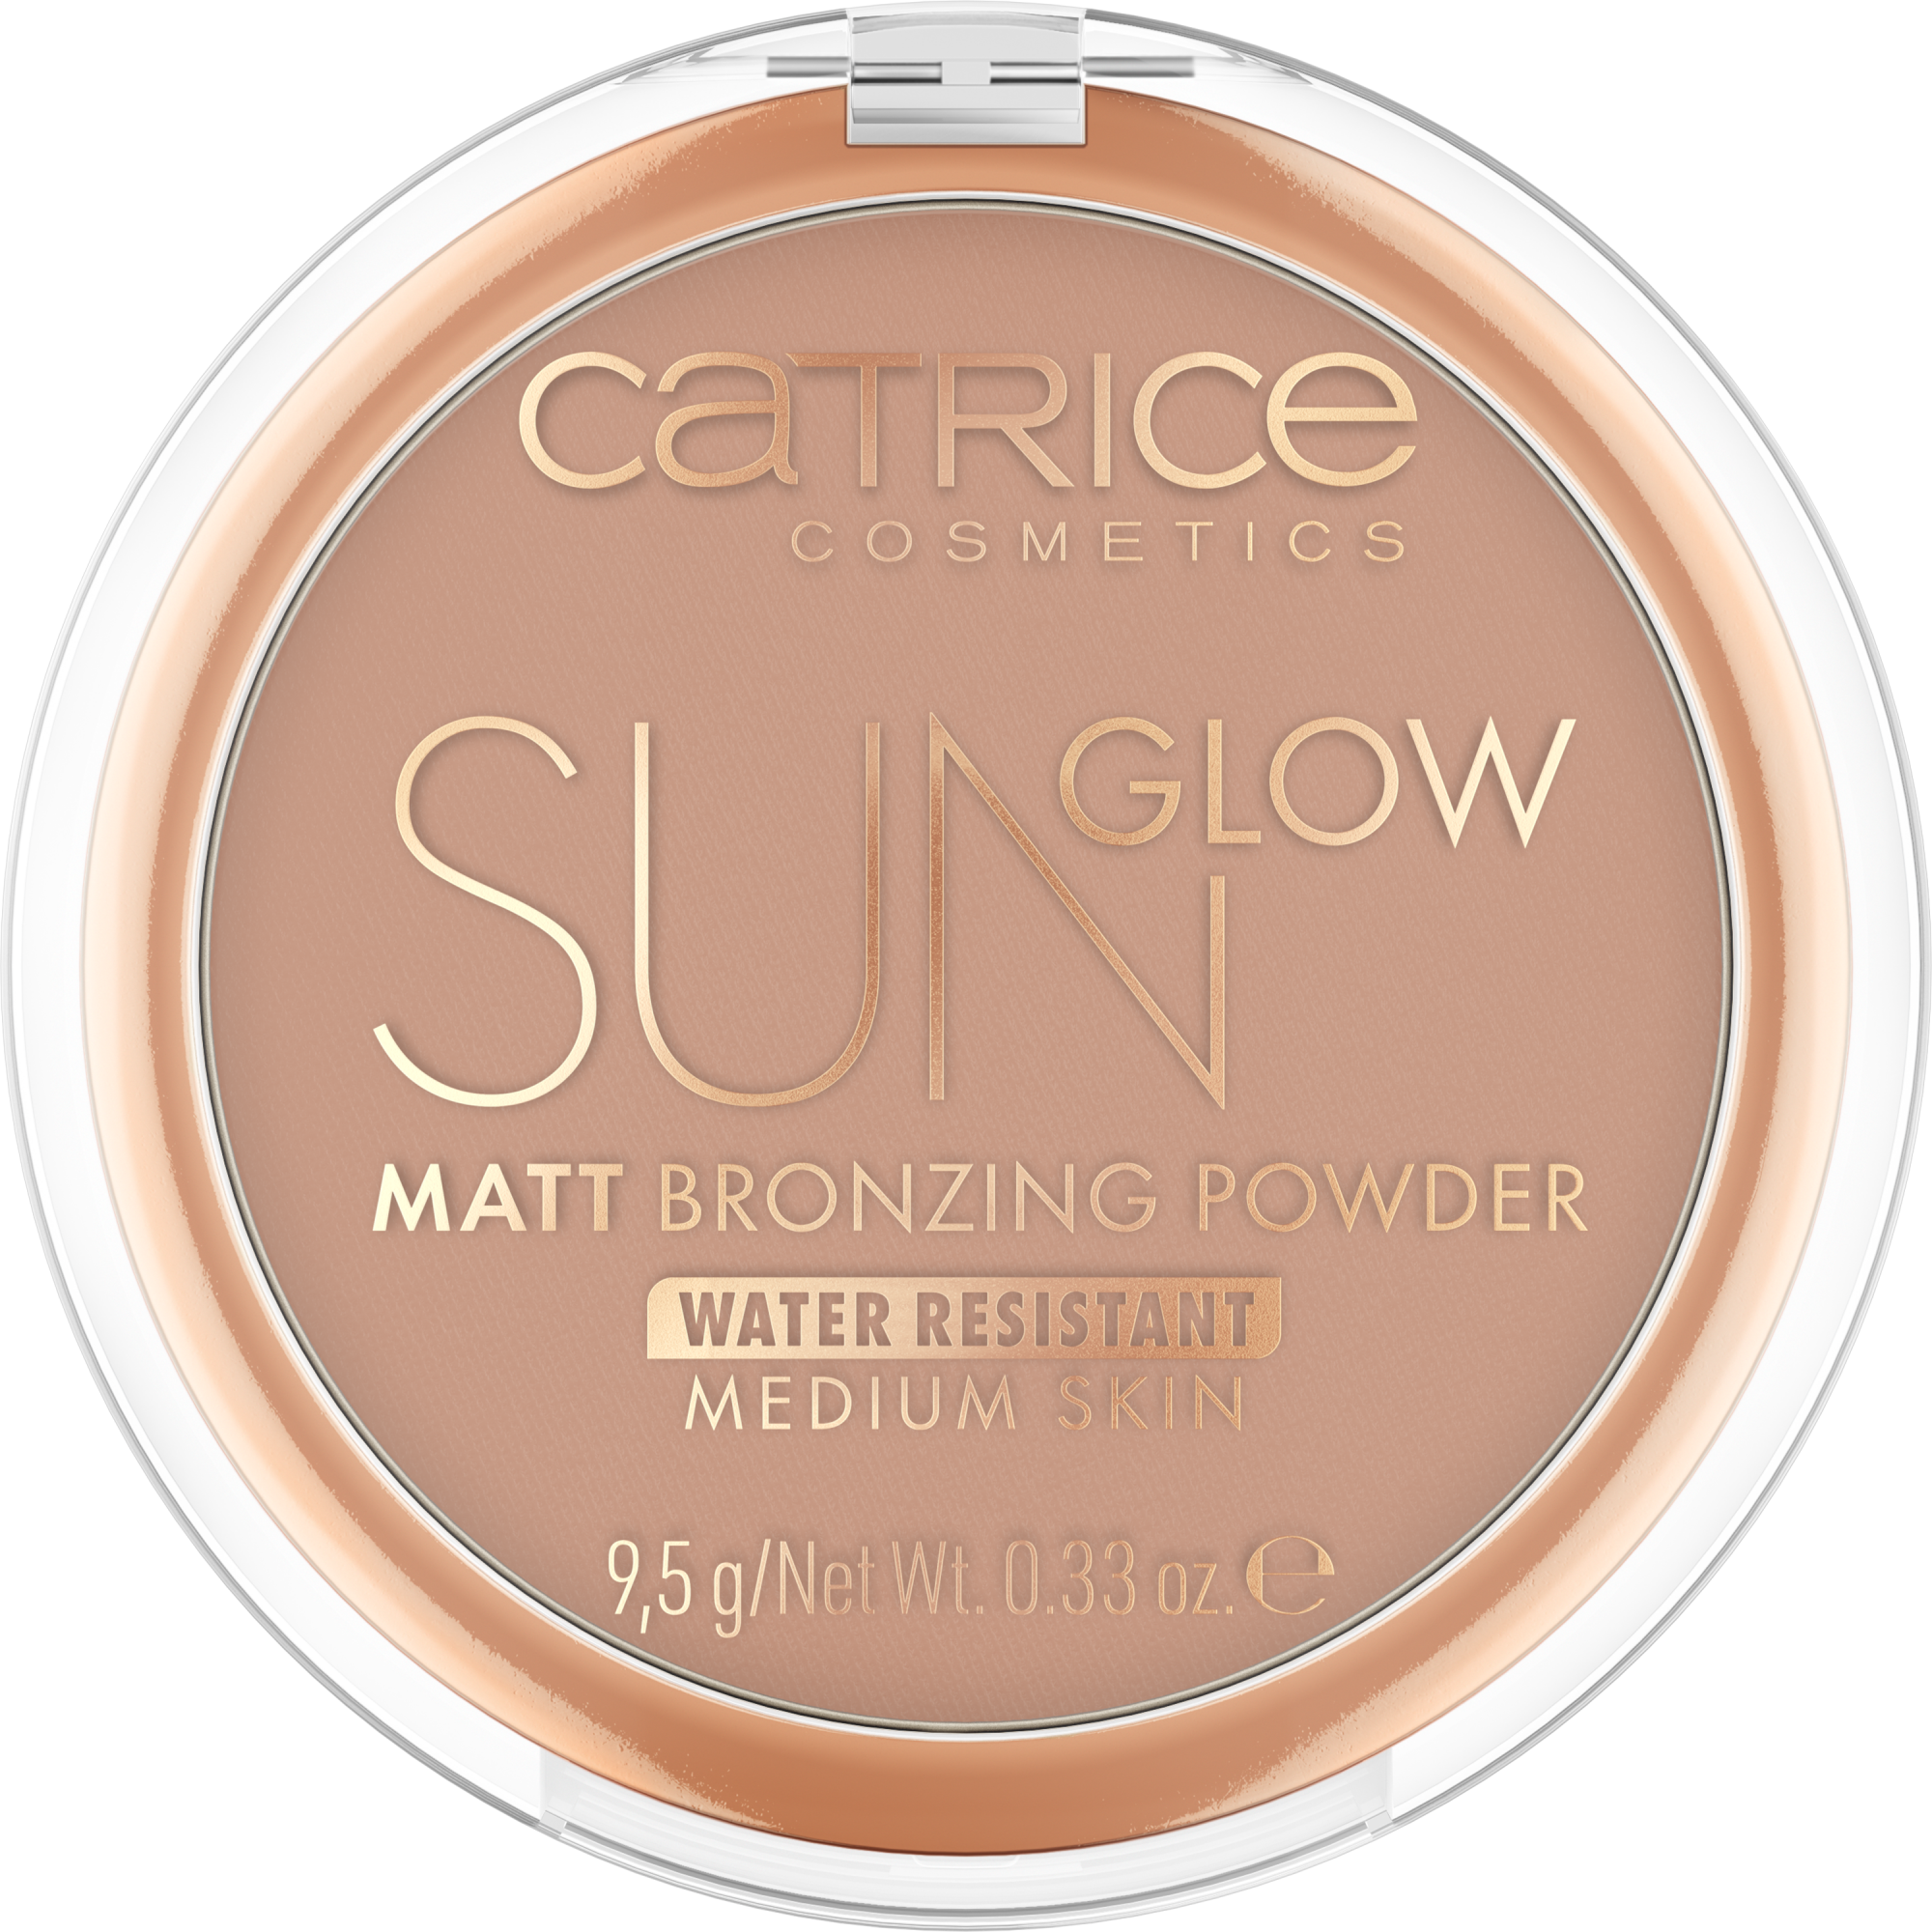 Sun Glow Matt Bronzing Powder